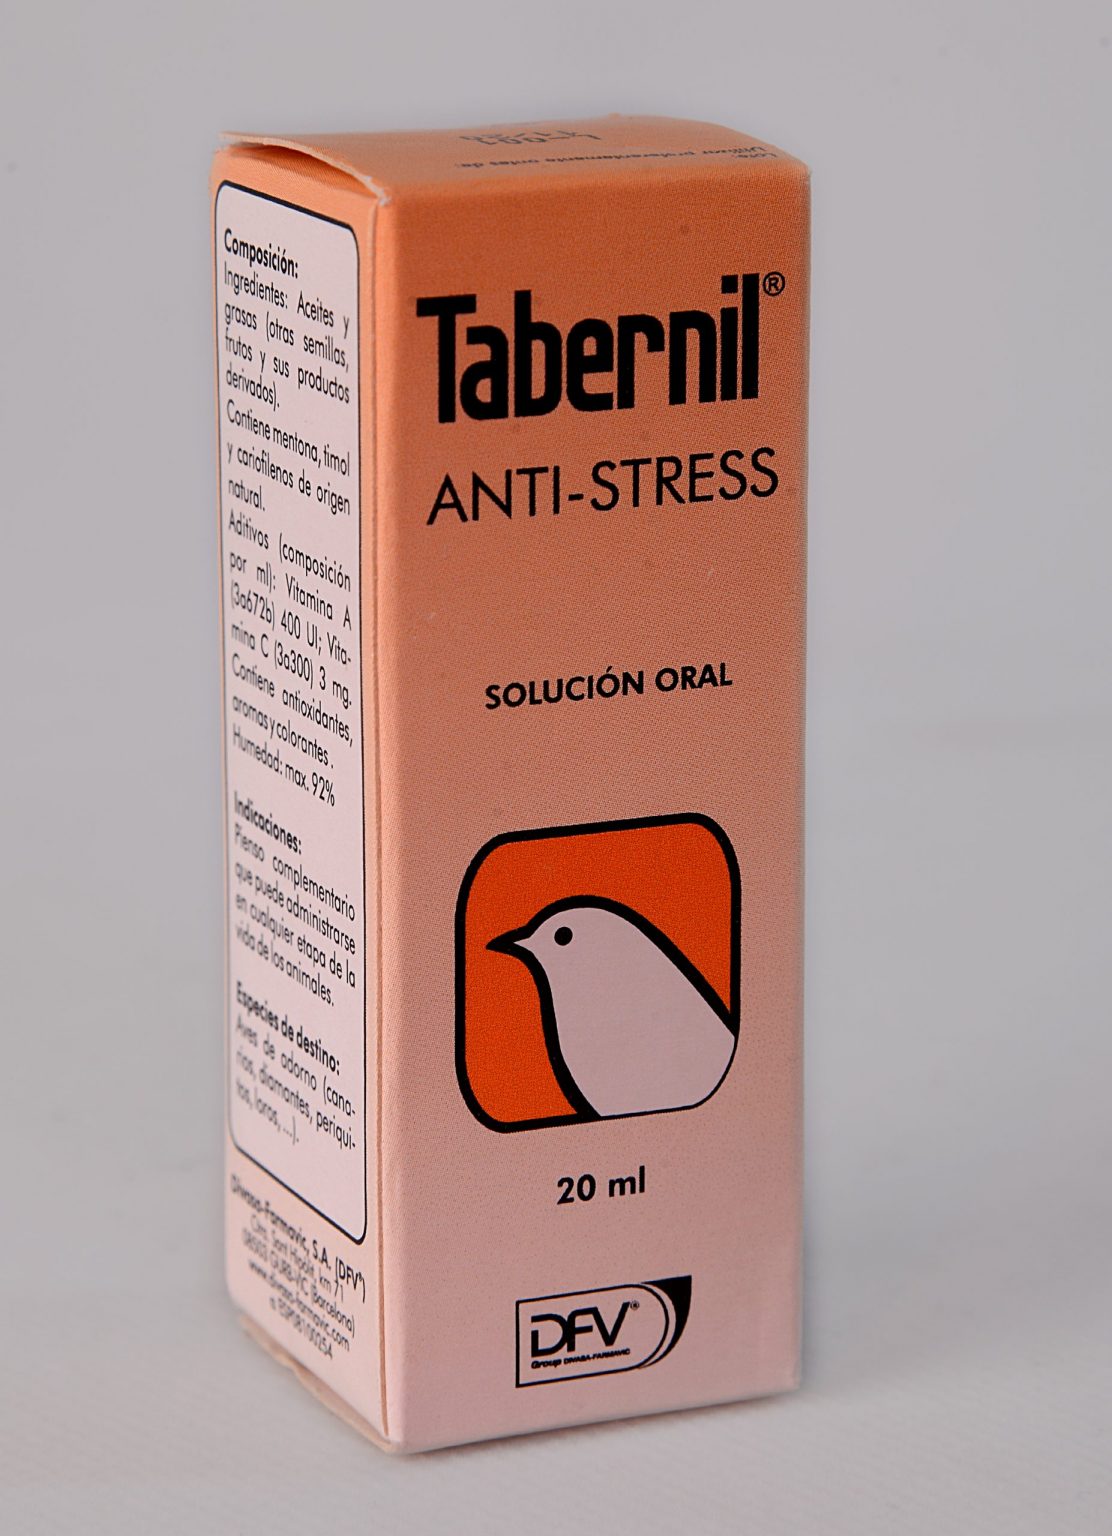 داروی ضد استرس تابرنیل مخصوص پرندگان | پرشین پت لند